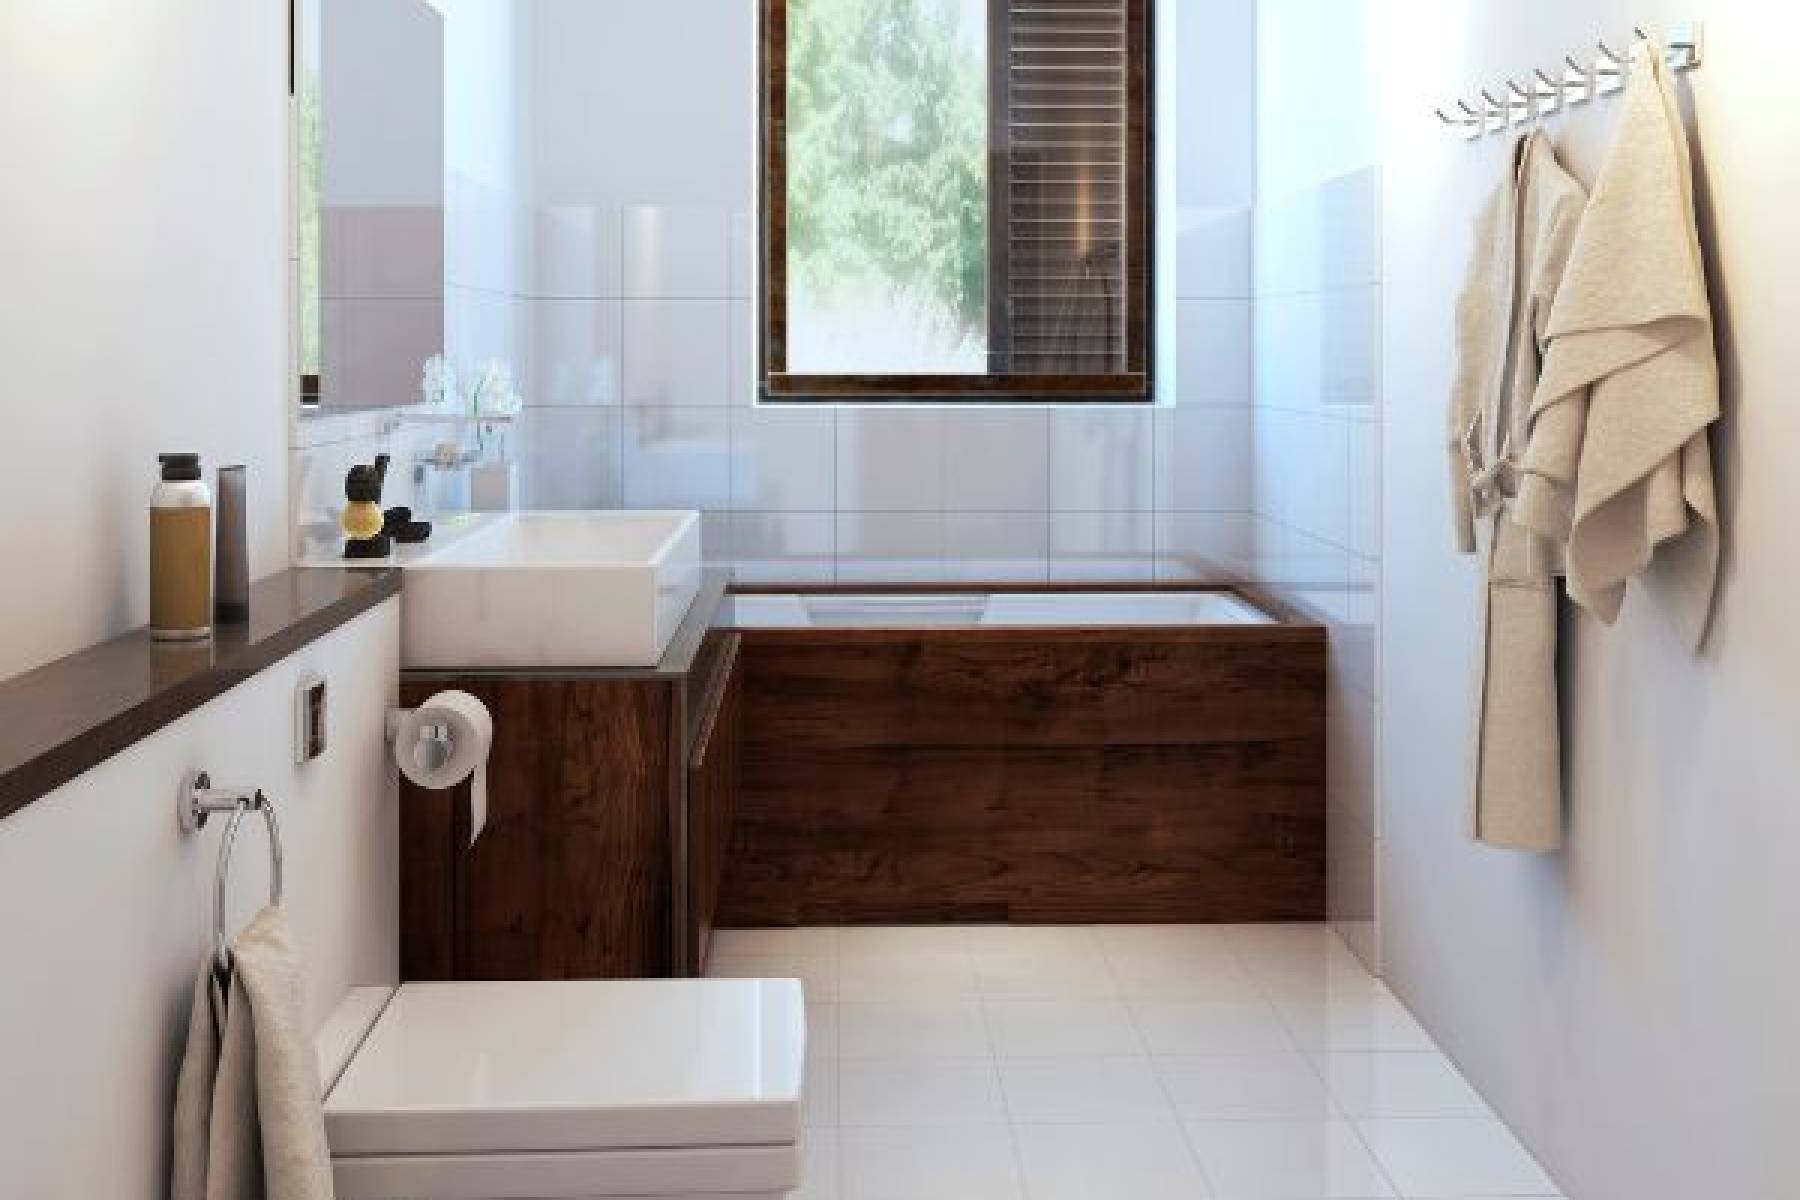 Innowacyjne rozwiązanie w łazience - stelaż wc, który oszczędza miejsce